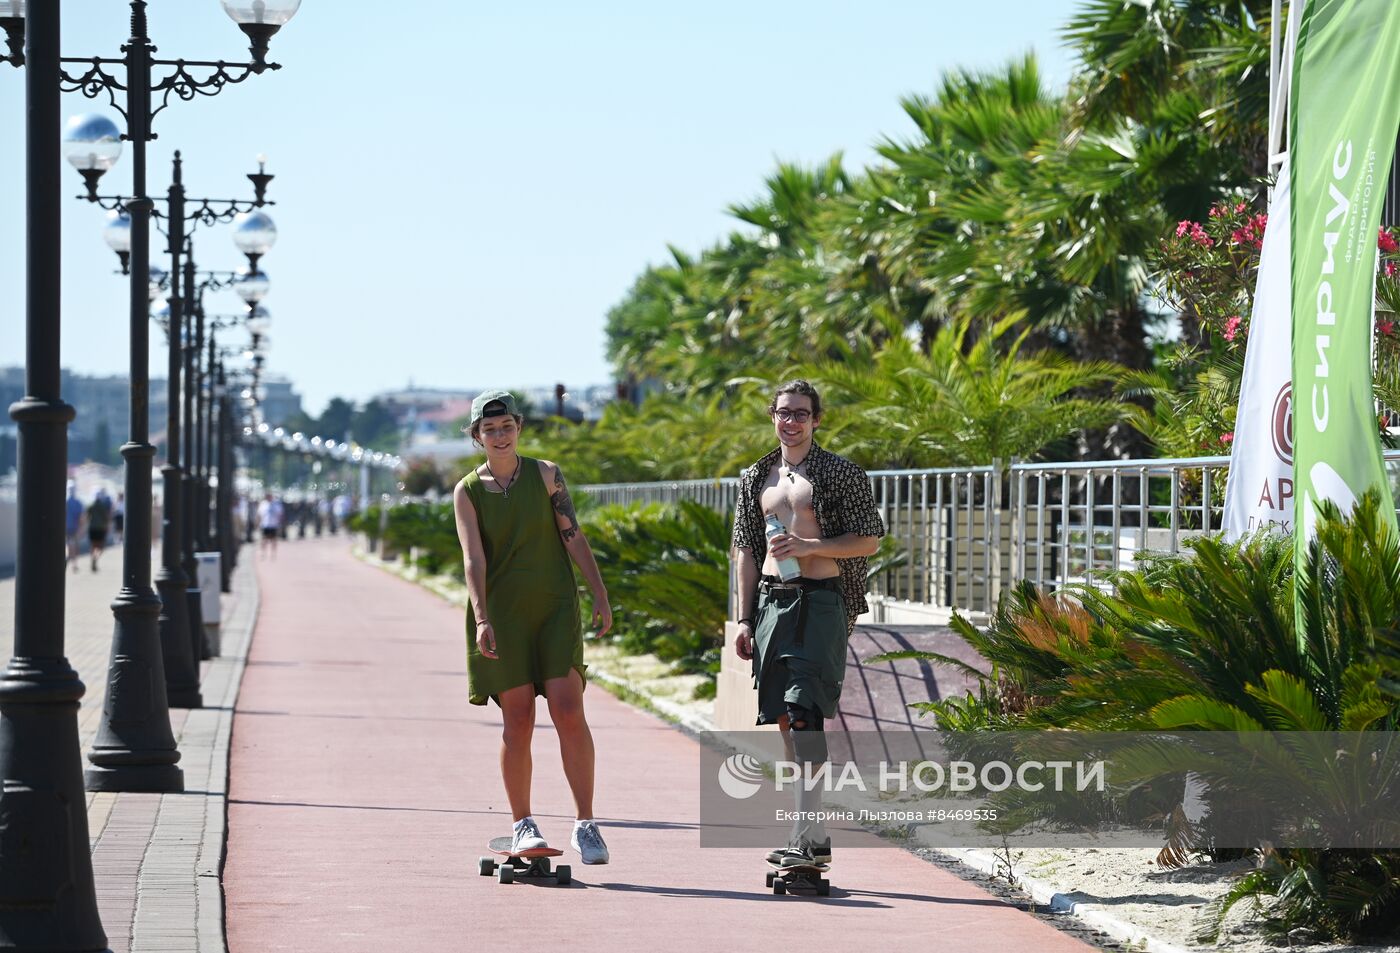 Пляжный отдых туристов в Сочи